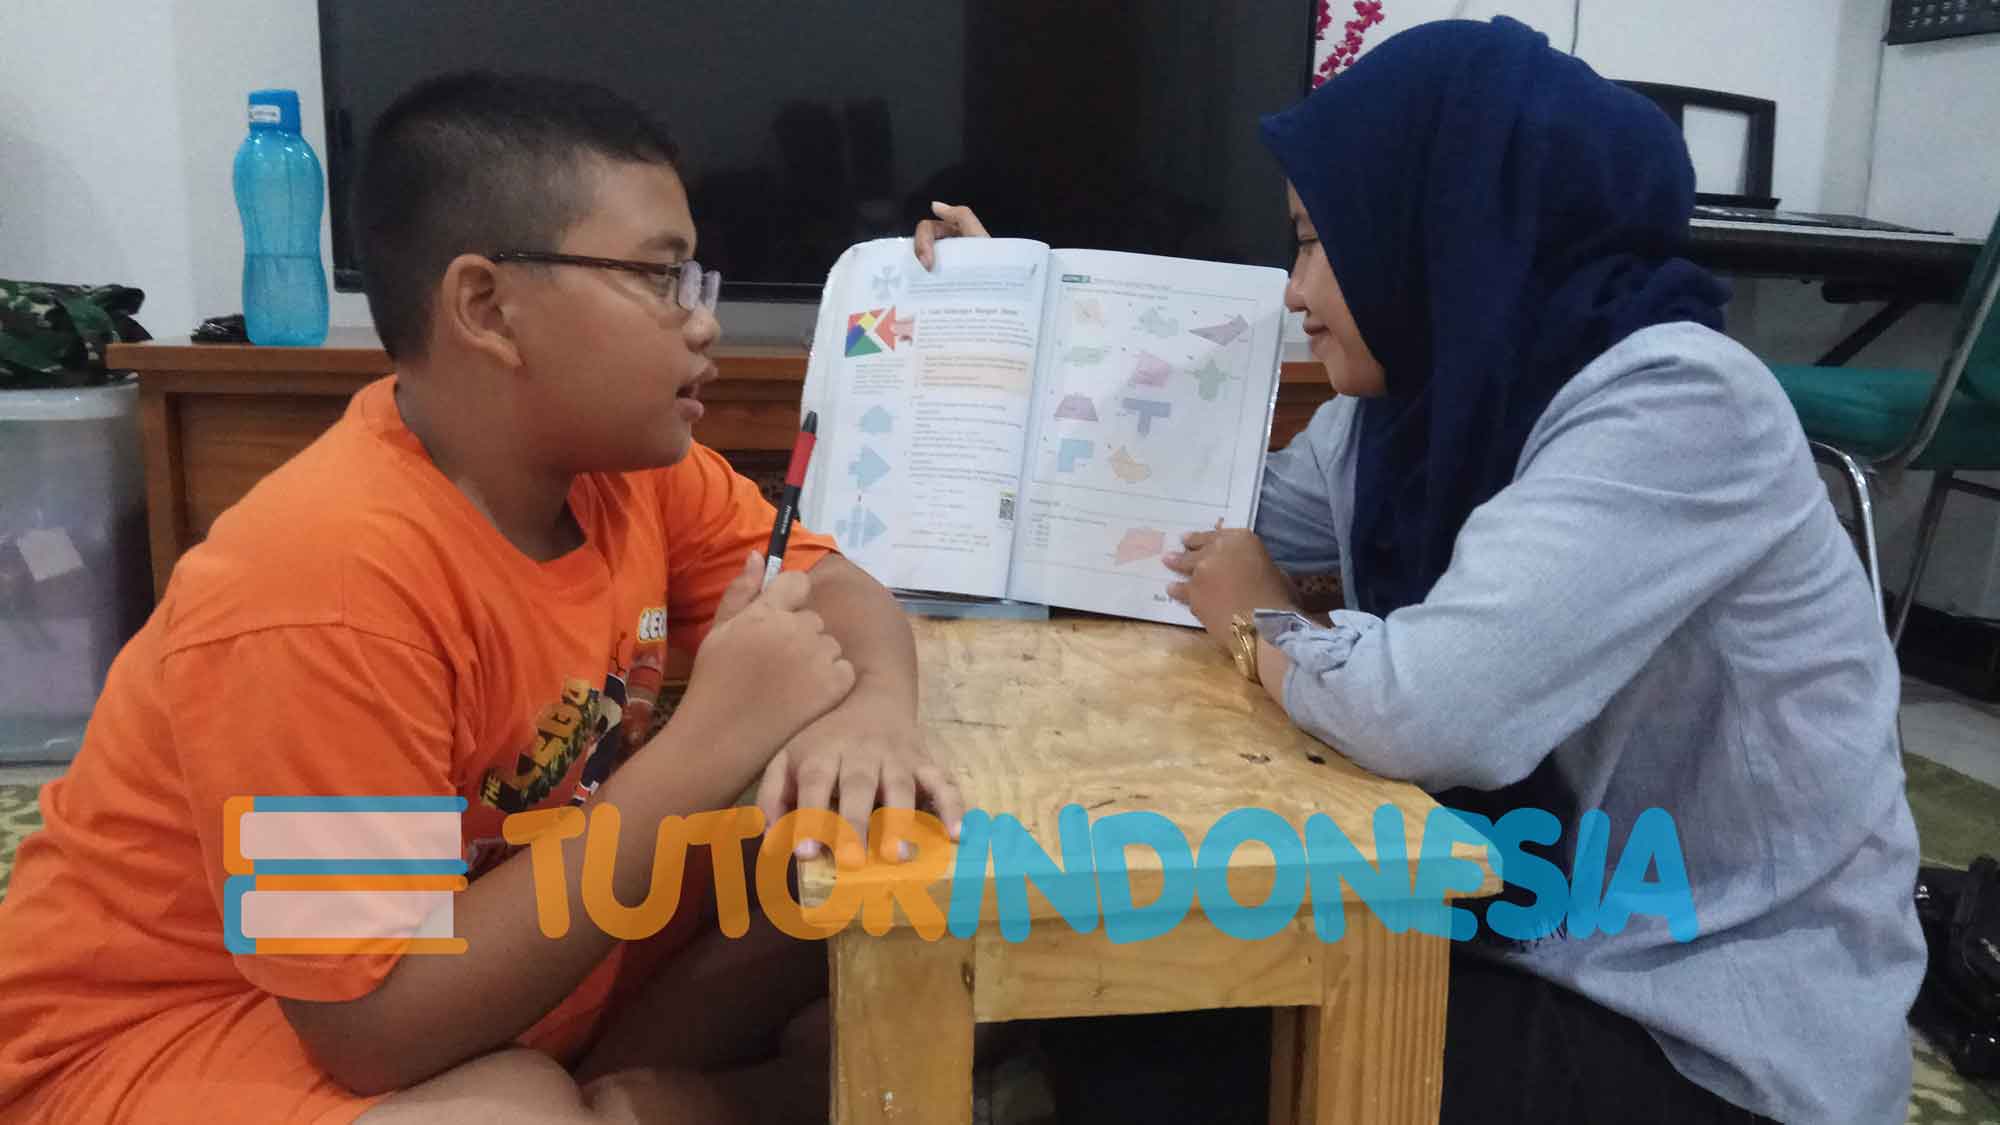 Tutorindonesia melayani permintaan guru les privat datang ke di DUREN SAWIT jakarta TIMUR dan sekitarnya